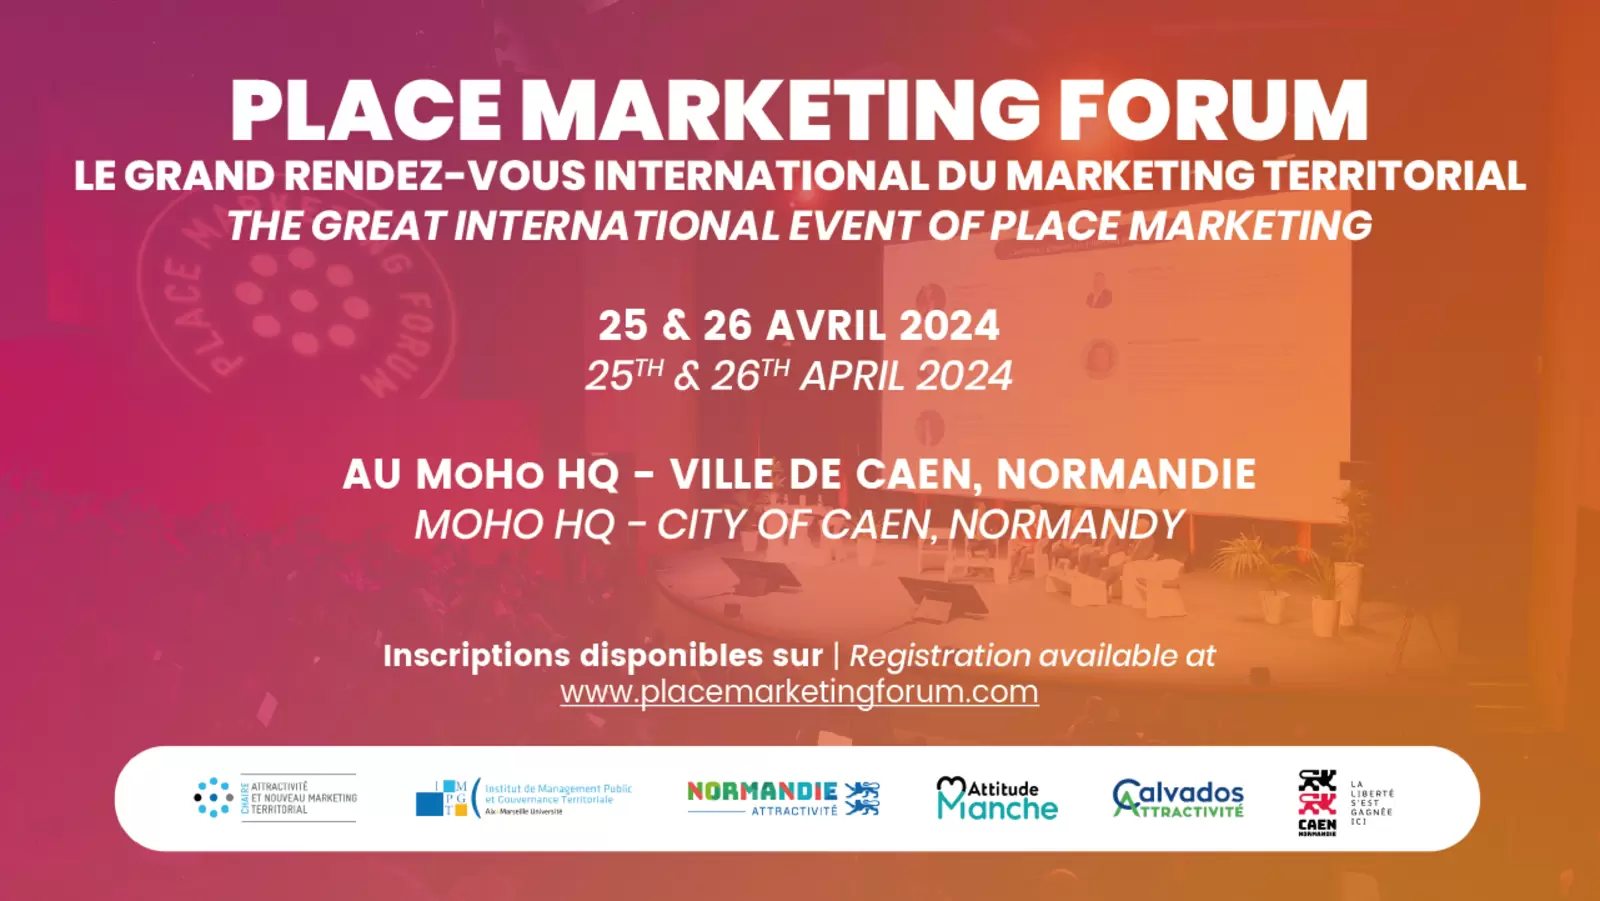 Place Marketing Forum 2024 | 25 et 26 avril 2024 - Moho Hq Caen